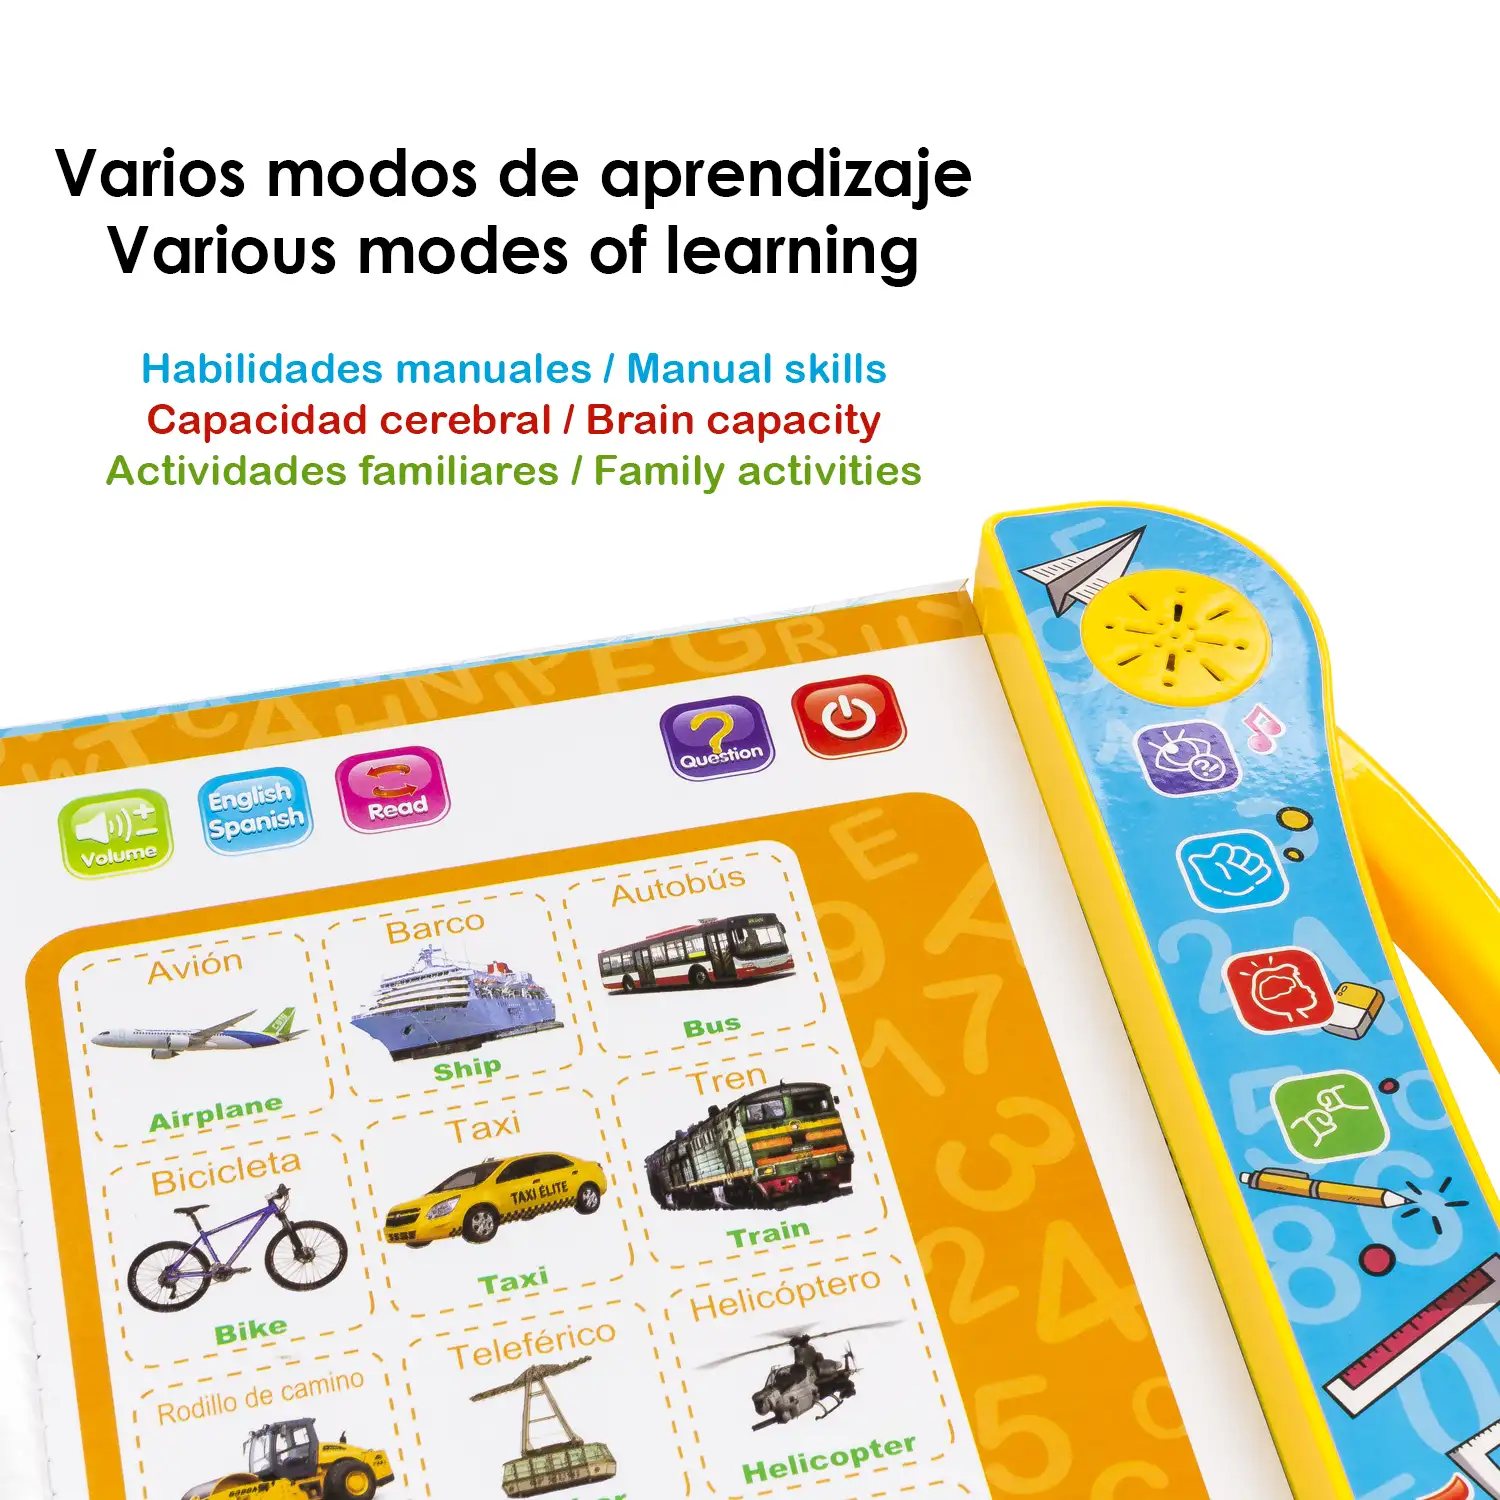 Libro de Estudio, libro electrónico educativo con sonidos, bilingüe en español e inglés. Actividades matemáticas, lengua, creativas.